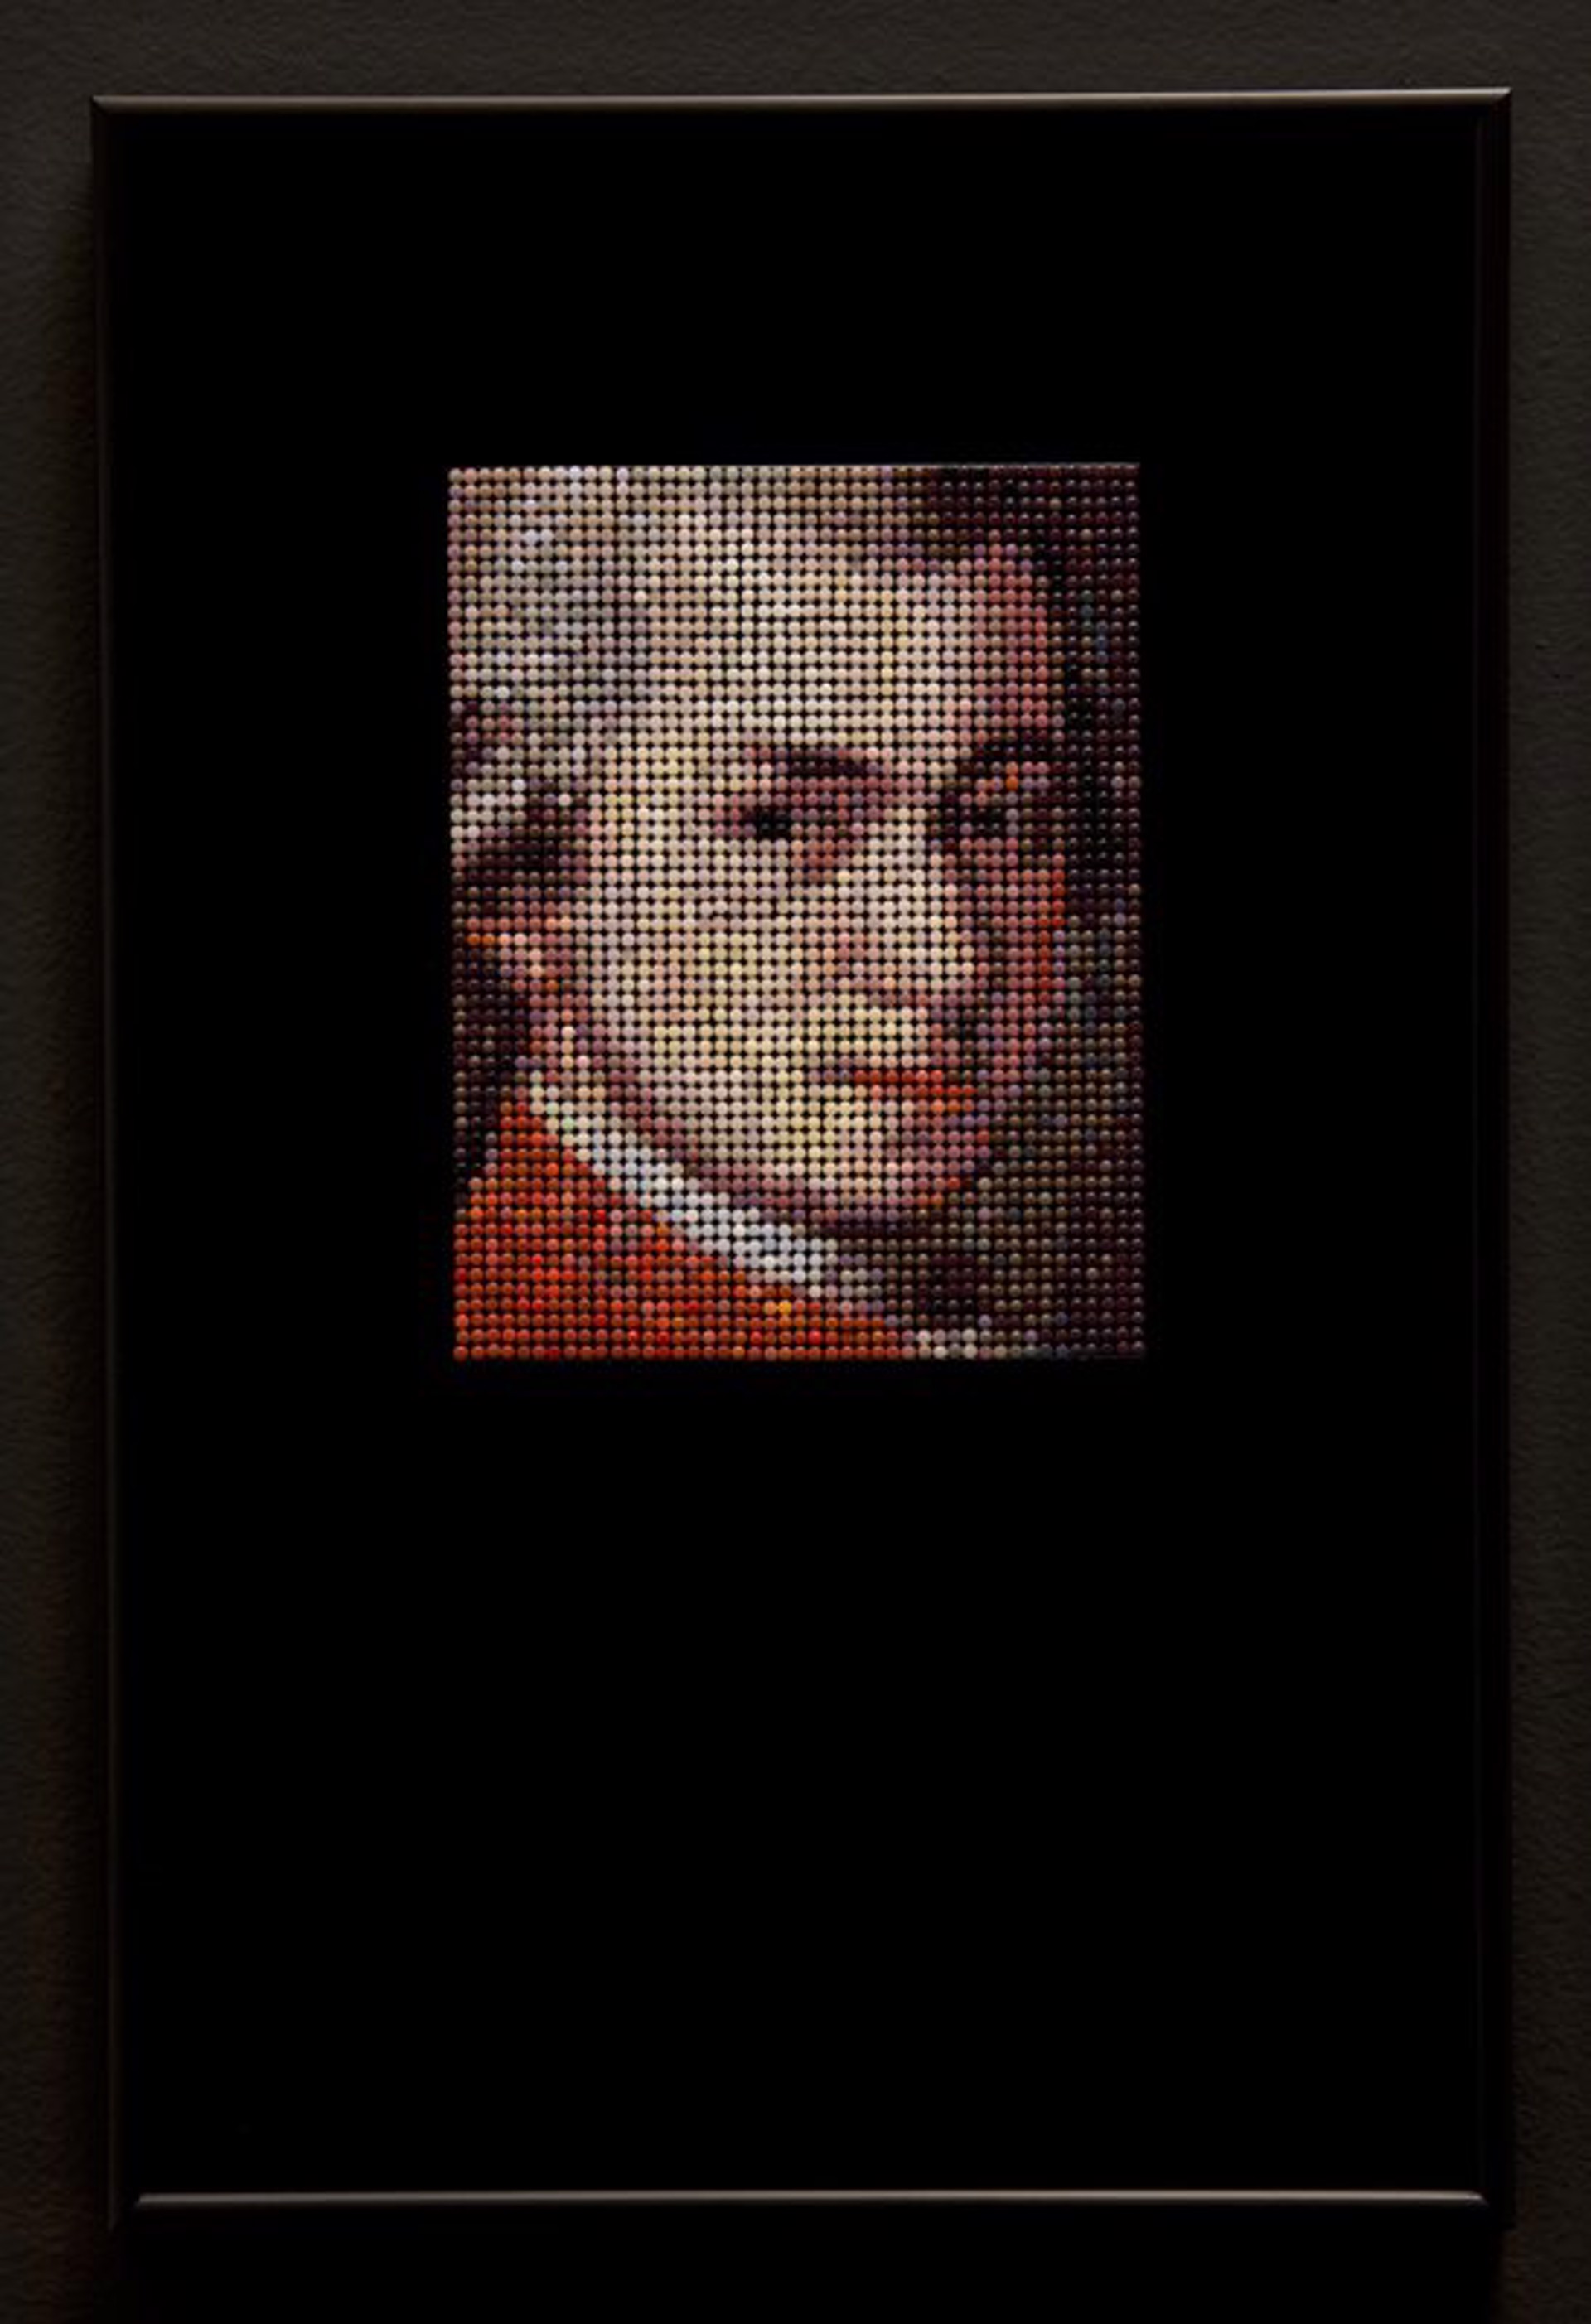 Mozart, 1819, after Kraft by Veruska Vagen